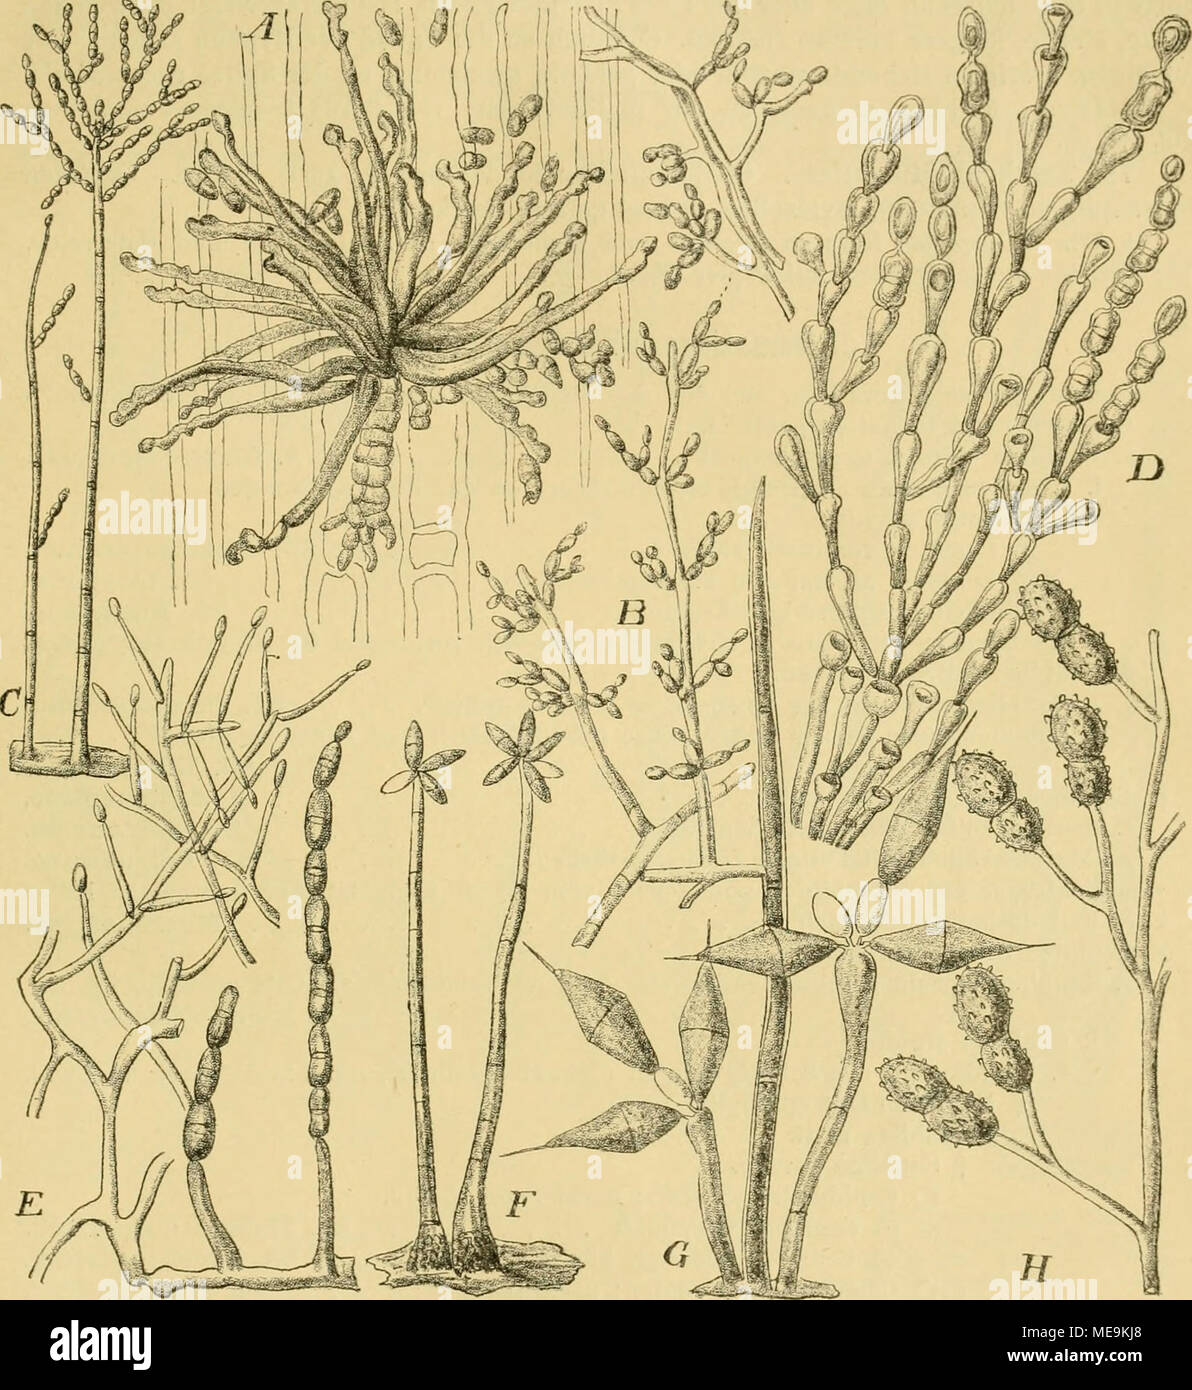 . Die Natürlichen Pflanzenfamilien nebst ihren Gattungen und wichtigeren Arten, insbesondere den Nutzpflanzen, unter Mitwirkung zahlreicher hervorragender Fachgelehrten begründet . Fig. 247. A—B Cladosporium herharum (PBrs.) Link, A Conidienträgerrasen auf einem Getreideblatt, Ii25/1. B Conidienträger aus den Kulturen, 250/1. — C Diplococcium strictum Sacc. Conidienträger, vergr. — D Cladotrichitm scyphophoinm Corda. Conidienträger, vergr. — E Kpochnium monilioides Link. Conidieutragendes Mycel, vergr. — F Cordana pauciseptata Prenss. Conidienträger, vergr. — 0 Beltramia rkomhica Penz. Conidie Stock Photo